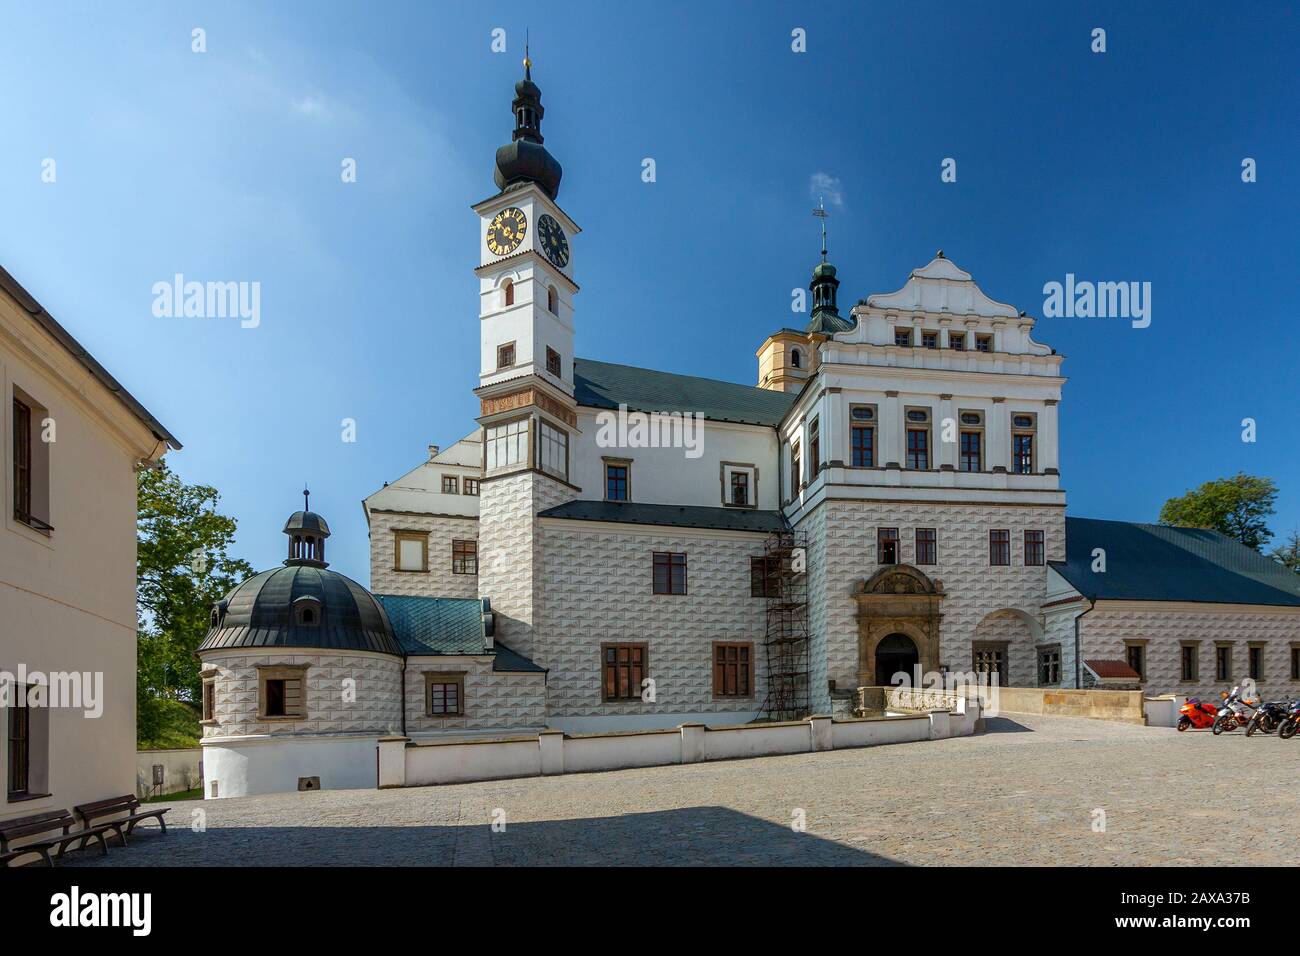 Czech Republic - Renaissance castle in town Pardubice Stock Photo